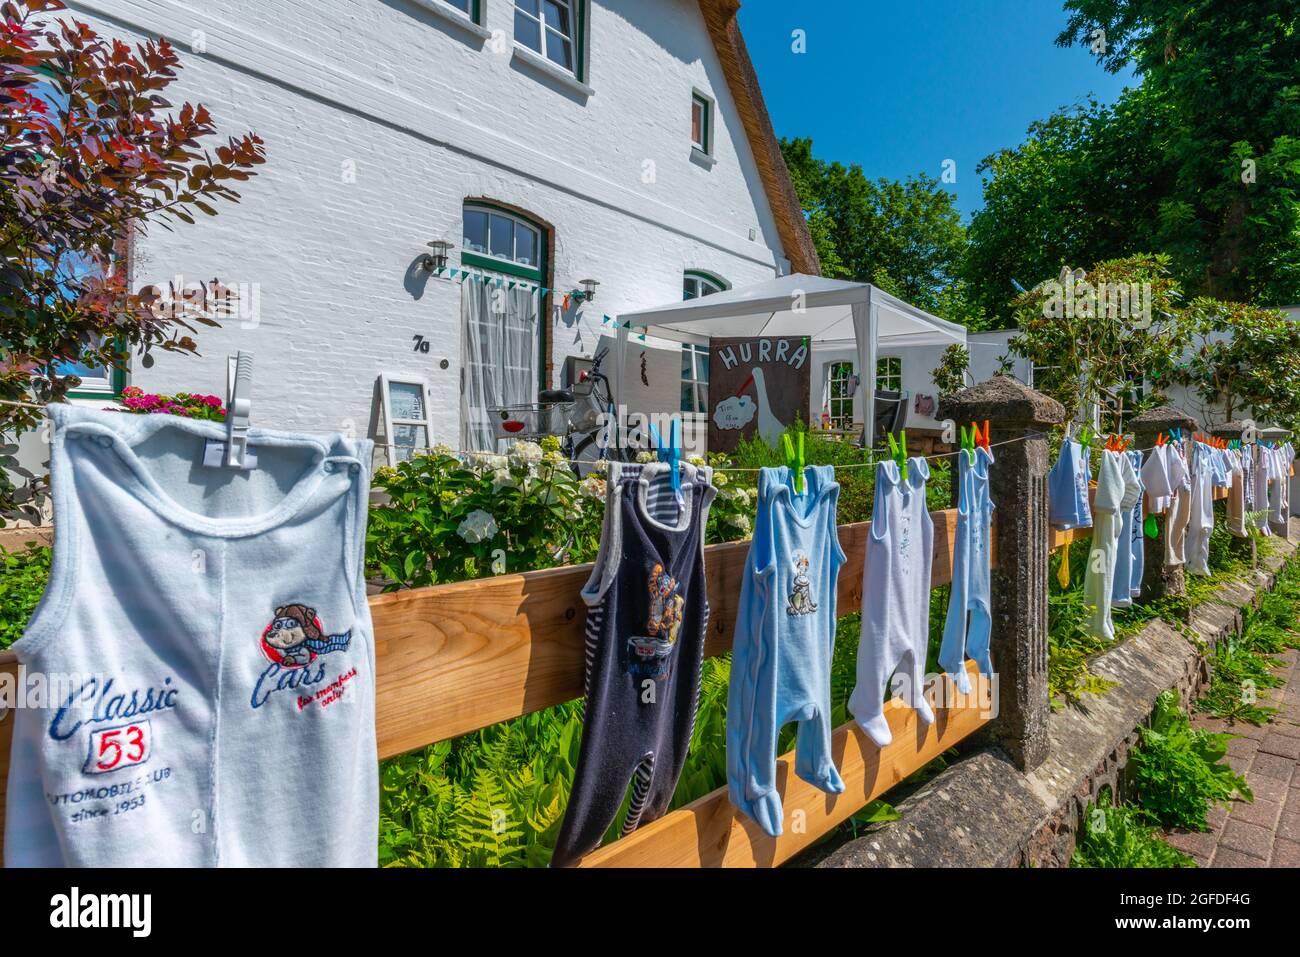 Colgando ropa de bebé en la línea de lavado en el jardín frontal es un antiguo traditon en la campiña, Süderstapel,Schleswig-Holstein, Norte de Alemania Foto de stock